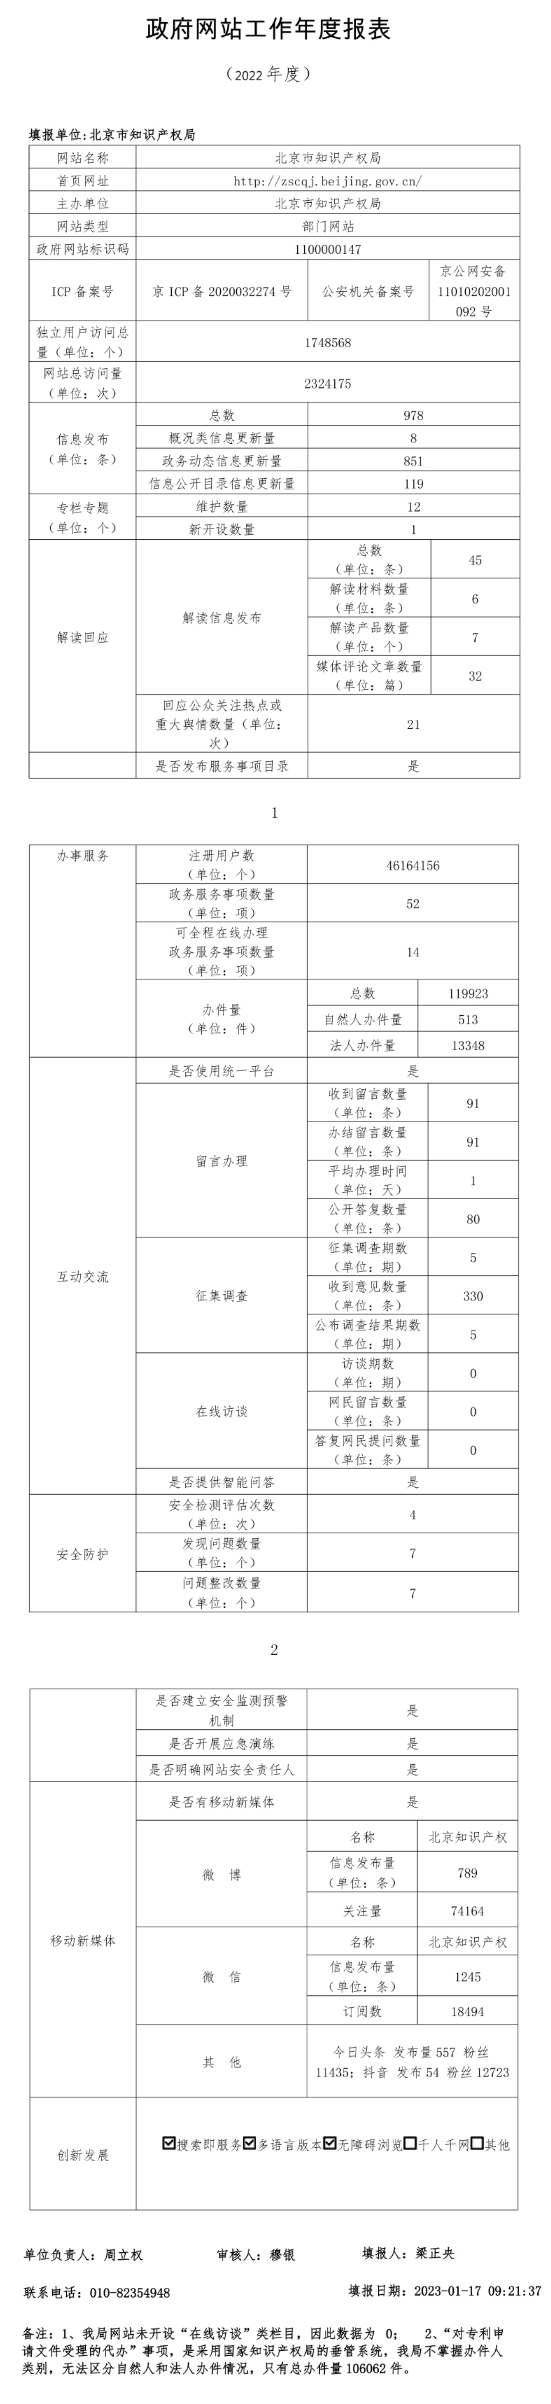 北京市知识产权局2022年政府网站年度工作报表